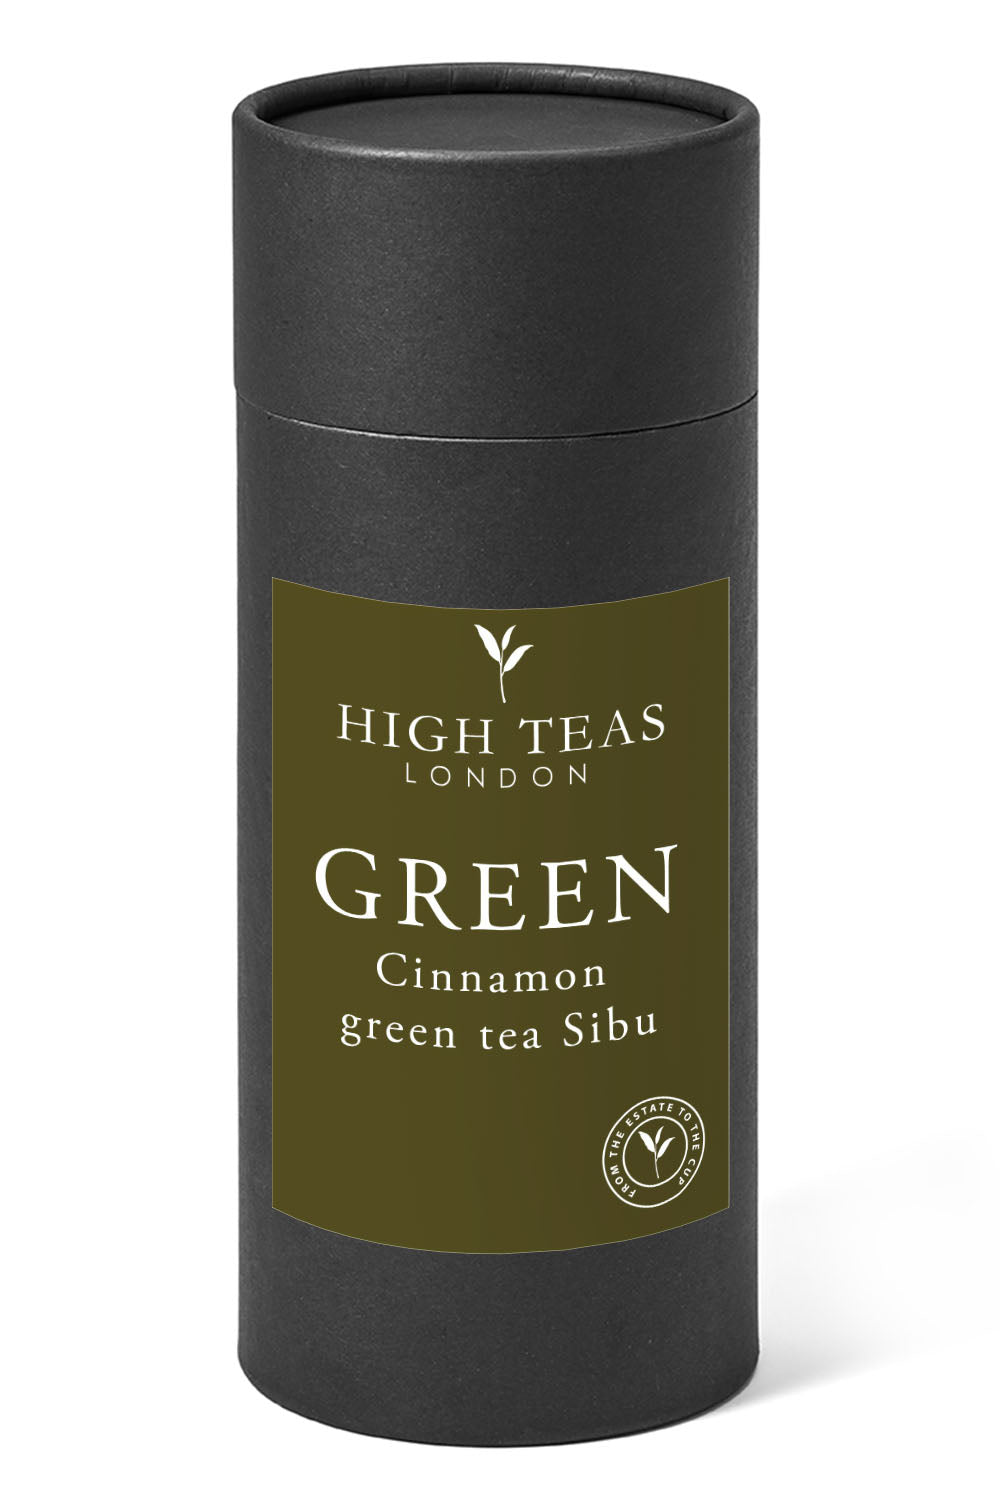 Cinnamon Sibu Green Tea-150g gift-Loose Leaf Tea-High Teas